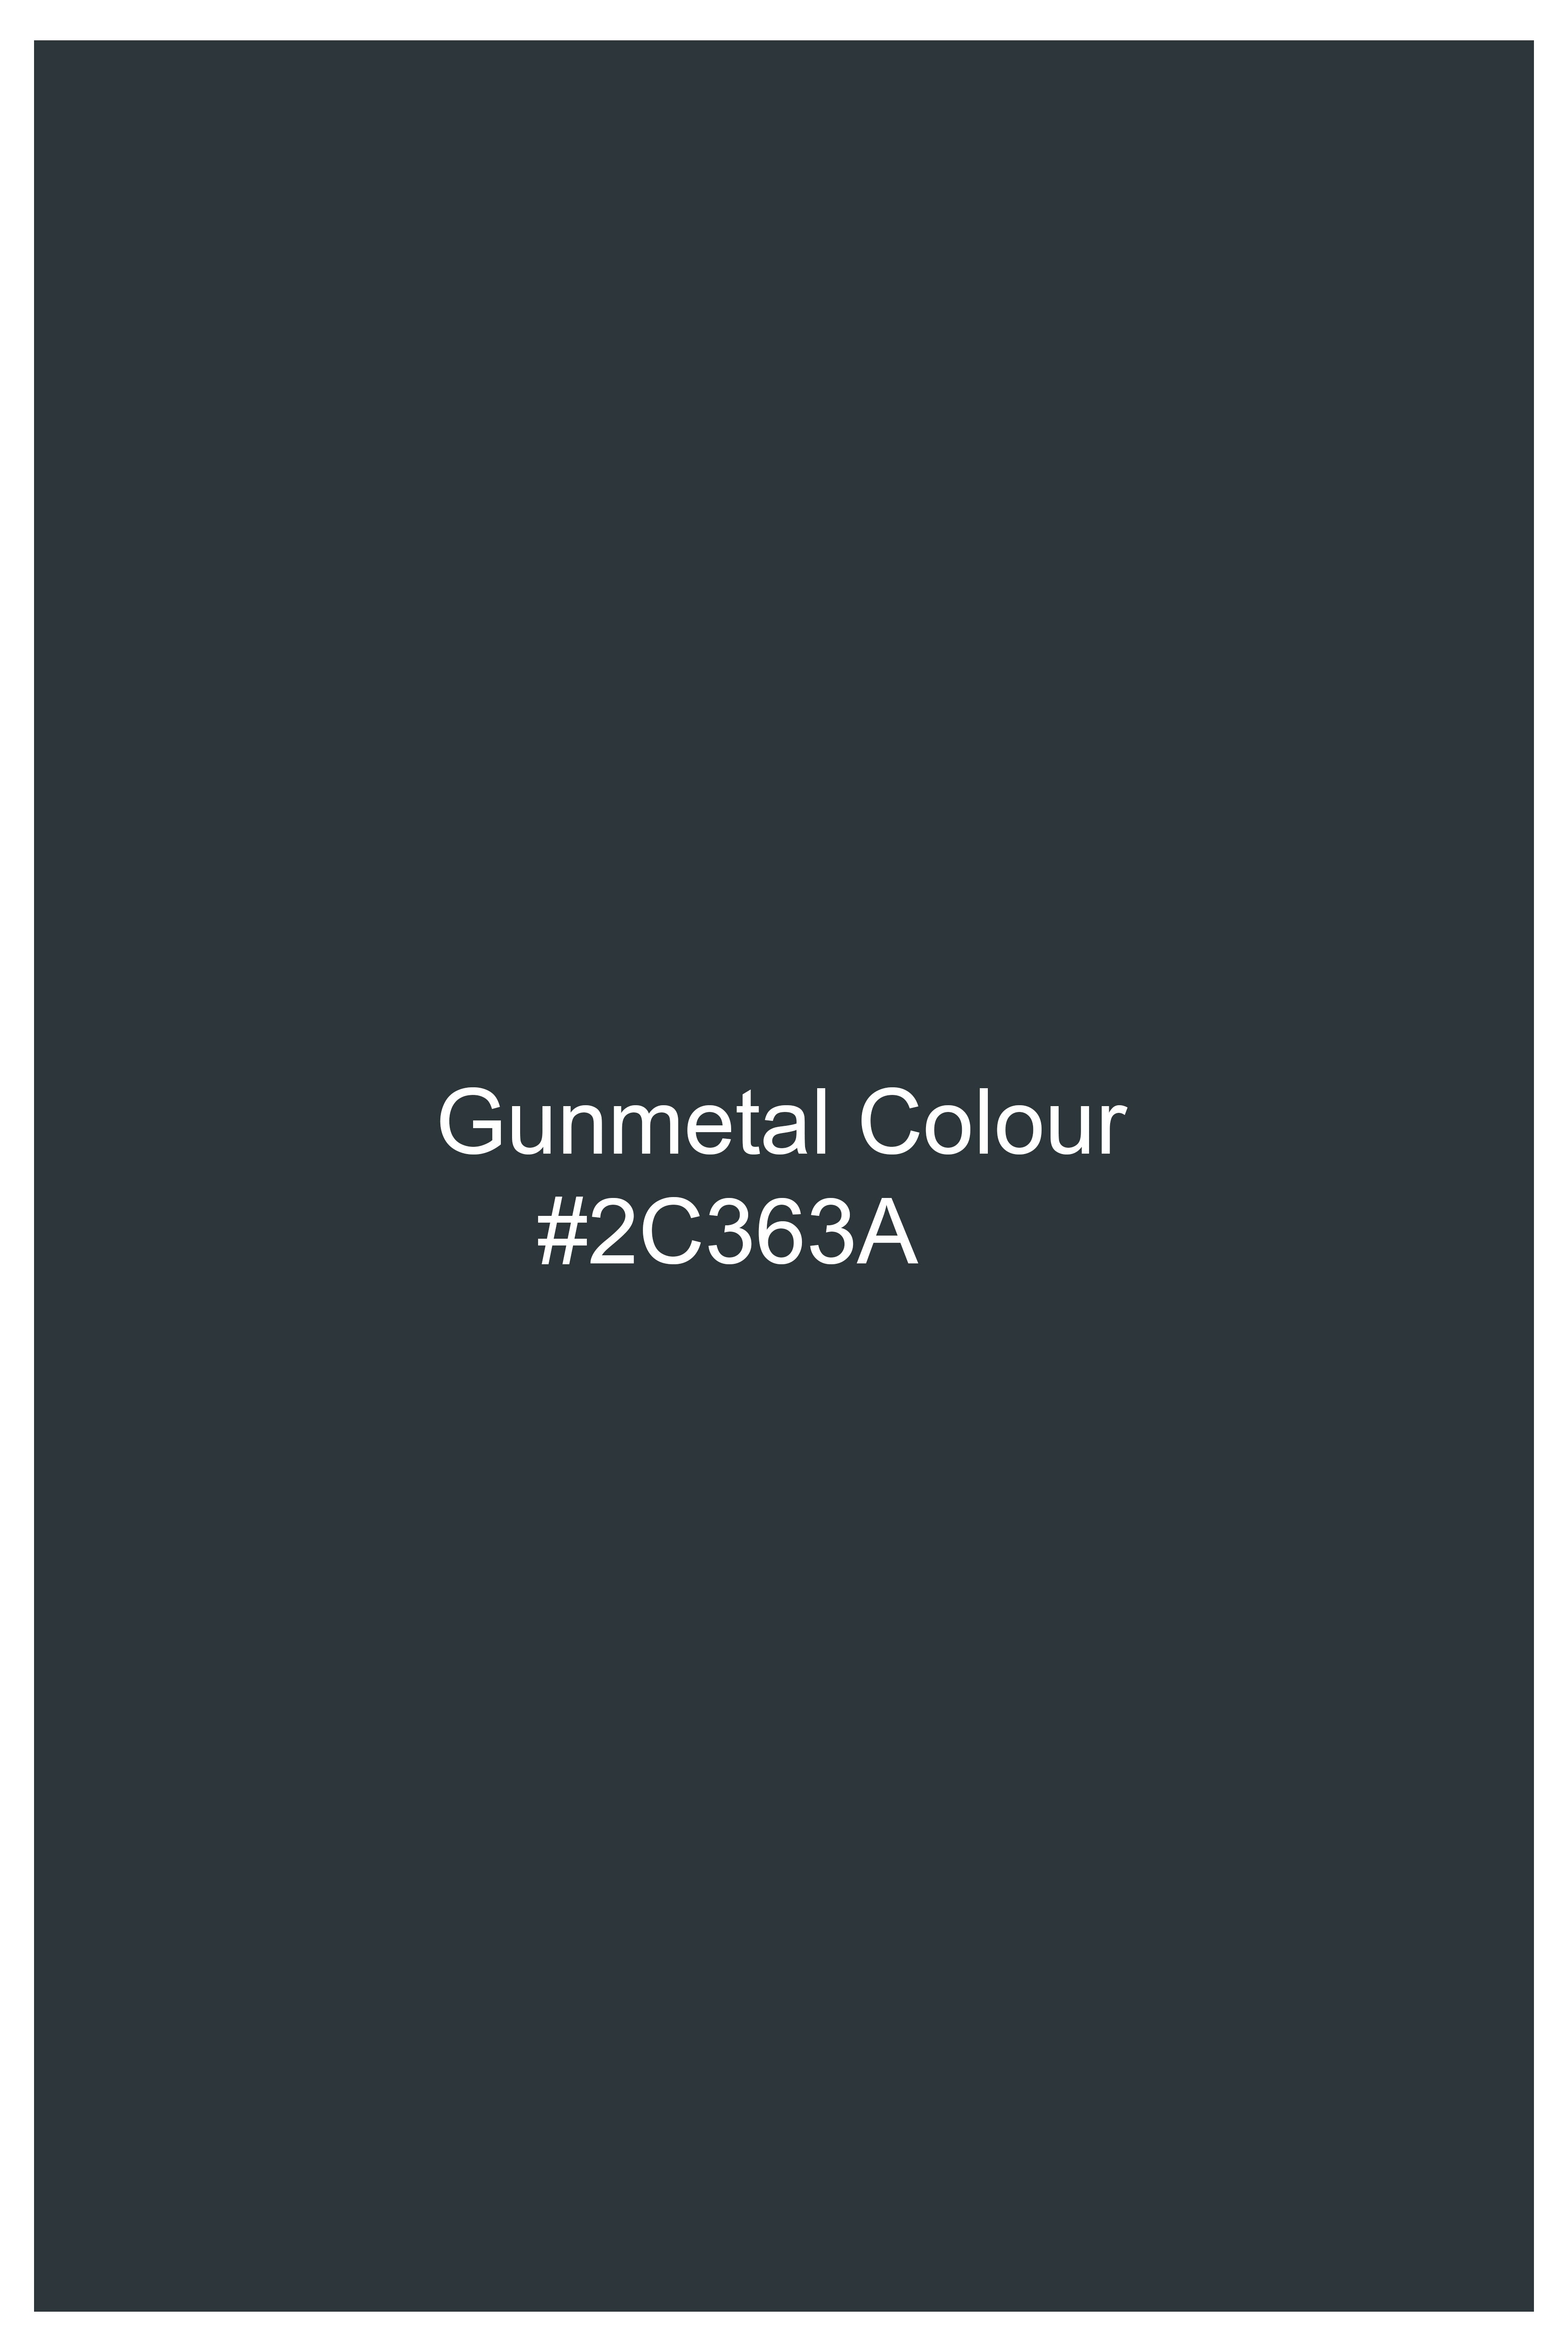 Gunmetal Gray Premium Cotton Waistcoat V2969-36, V2969-38, V2969-40, V2969-42, V2969-44, V2969-46, V2969-48, V2969-50, V2969-69, V2969-54, V2969-56, V2969-58, V2969-60